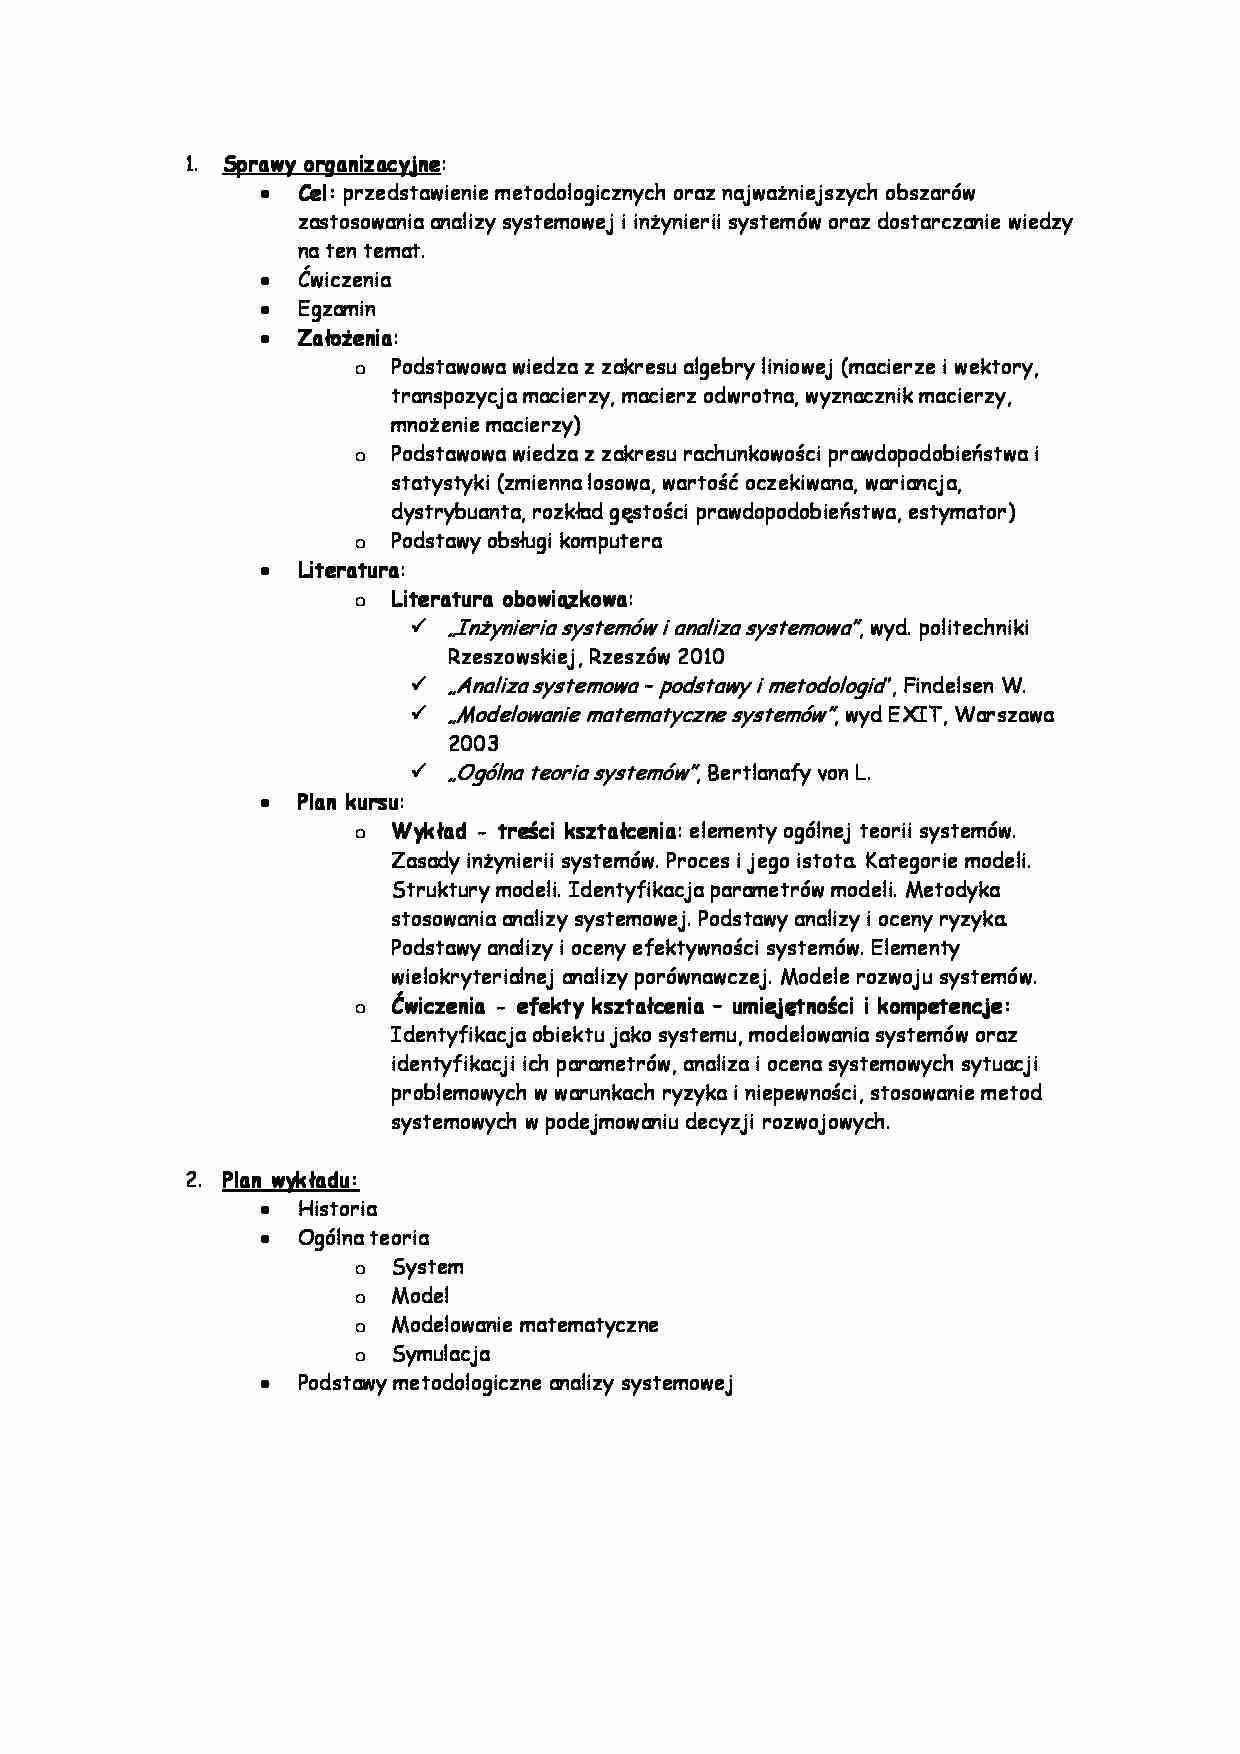 Inżynieria systemów i analiza systemowa - opracowanie spraw organizacyjnych - strona 1